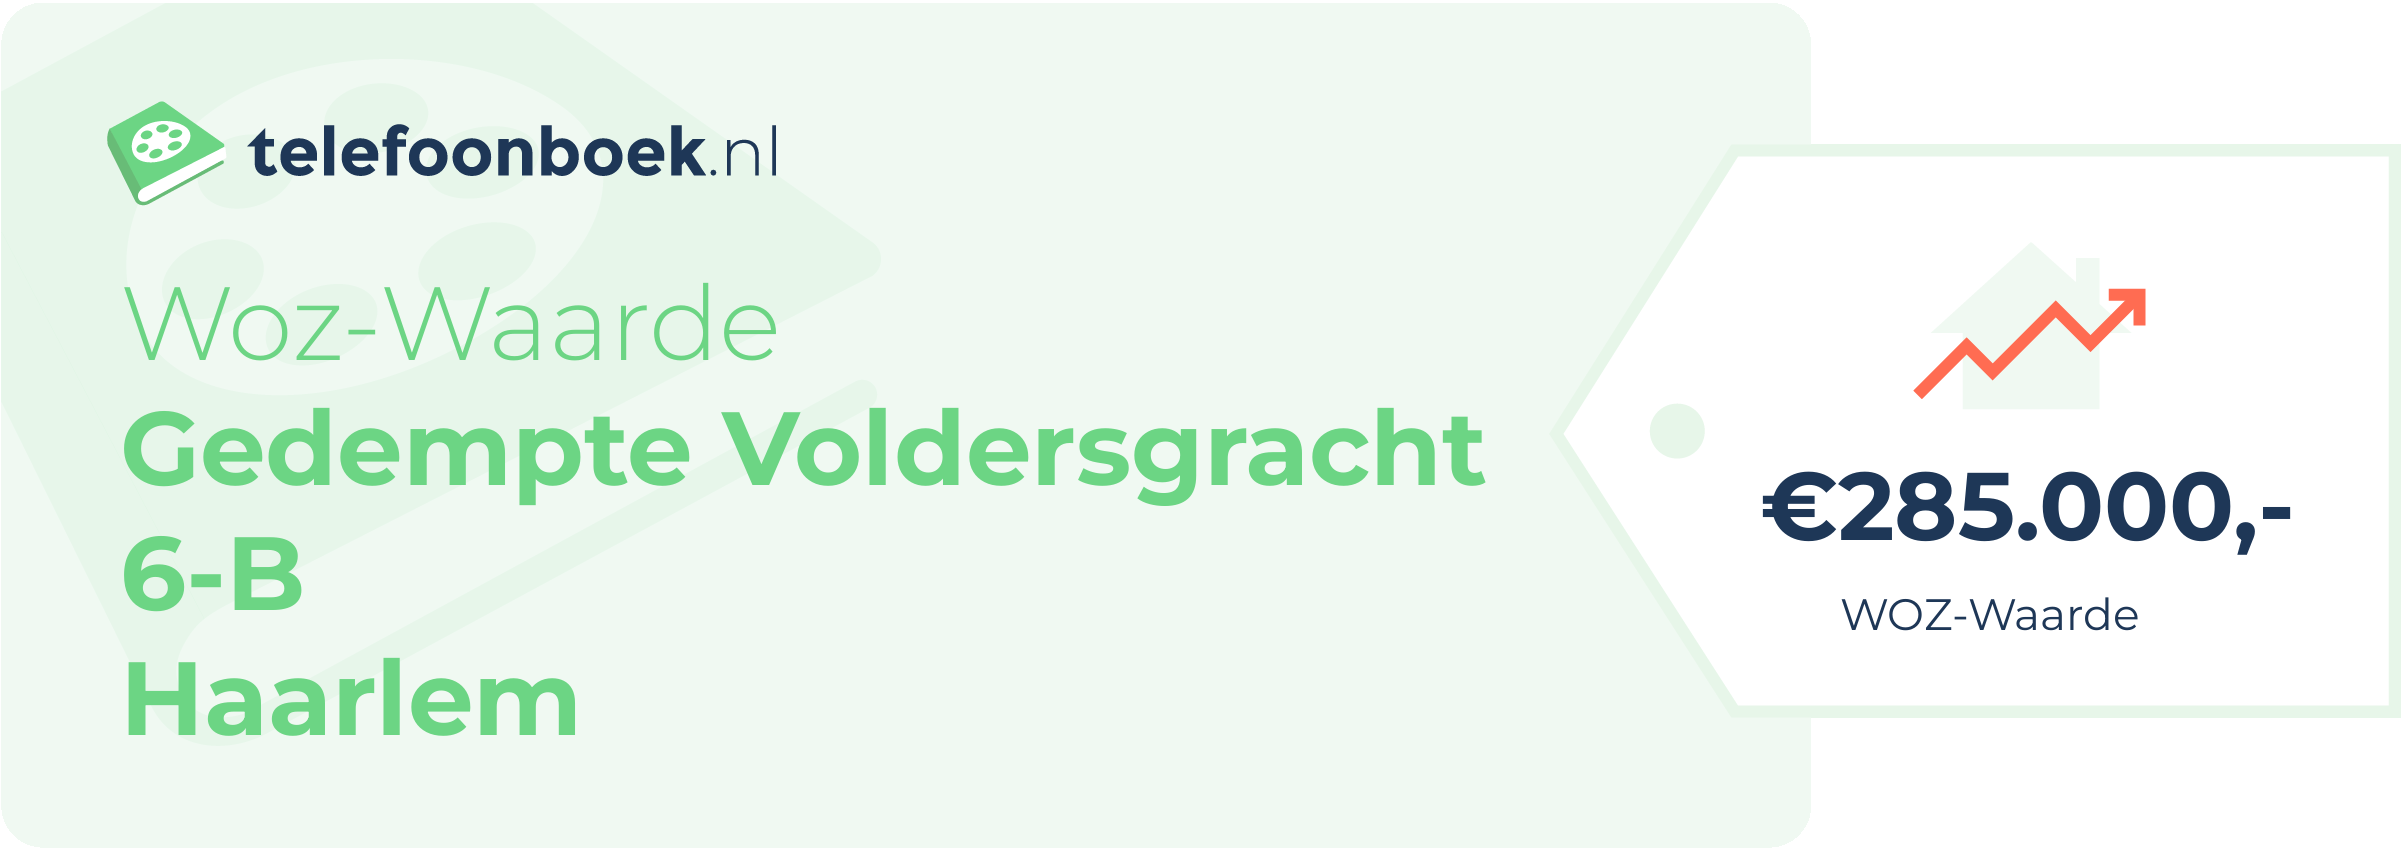 WOZ-waarde Gedempte Voldersgracht 6-B Haarlem